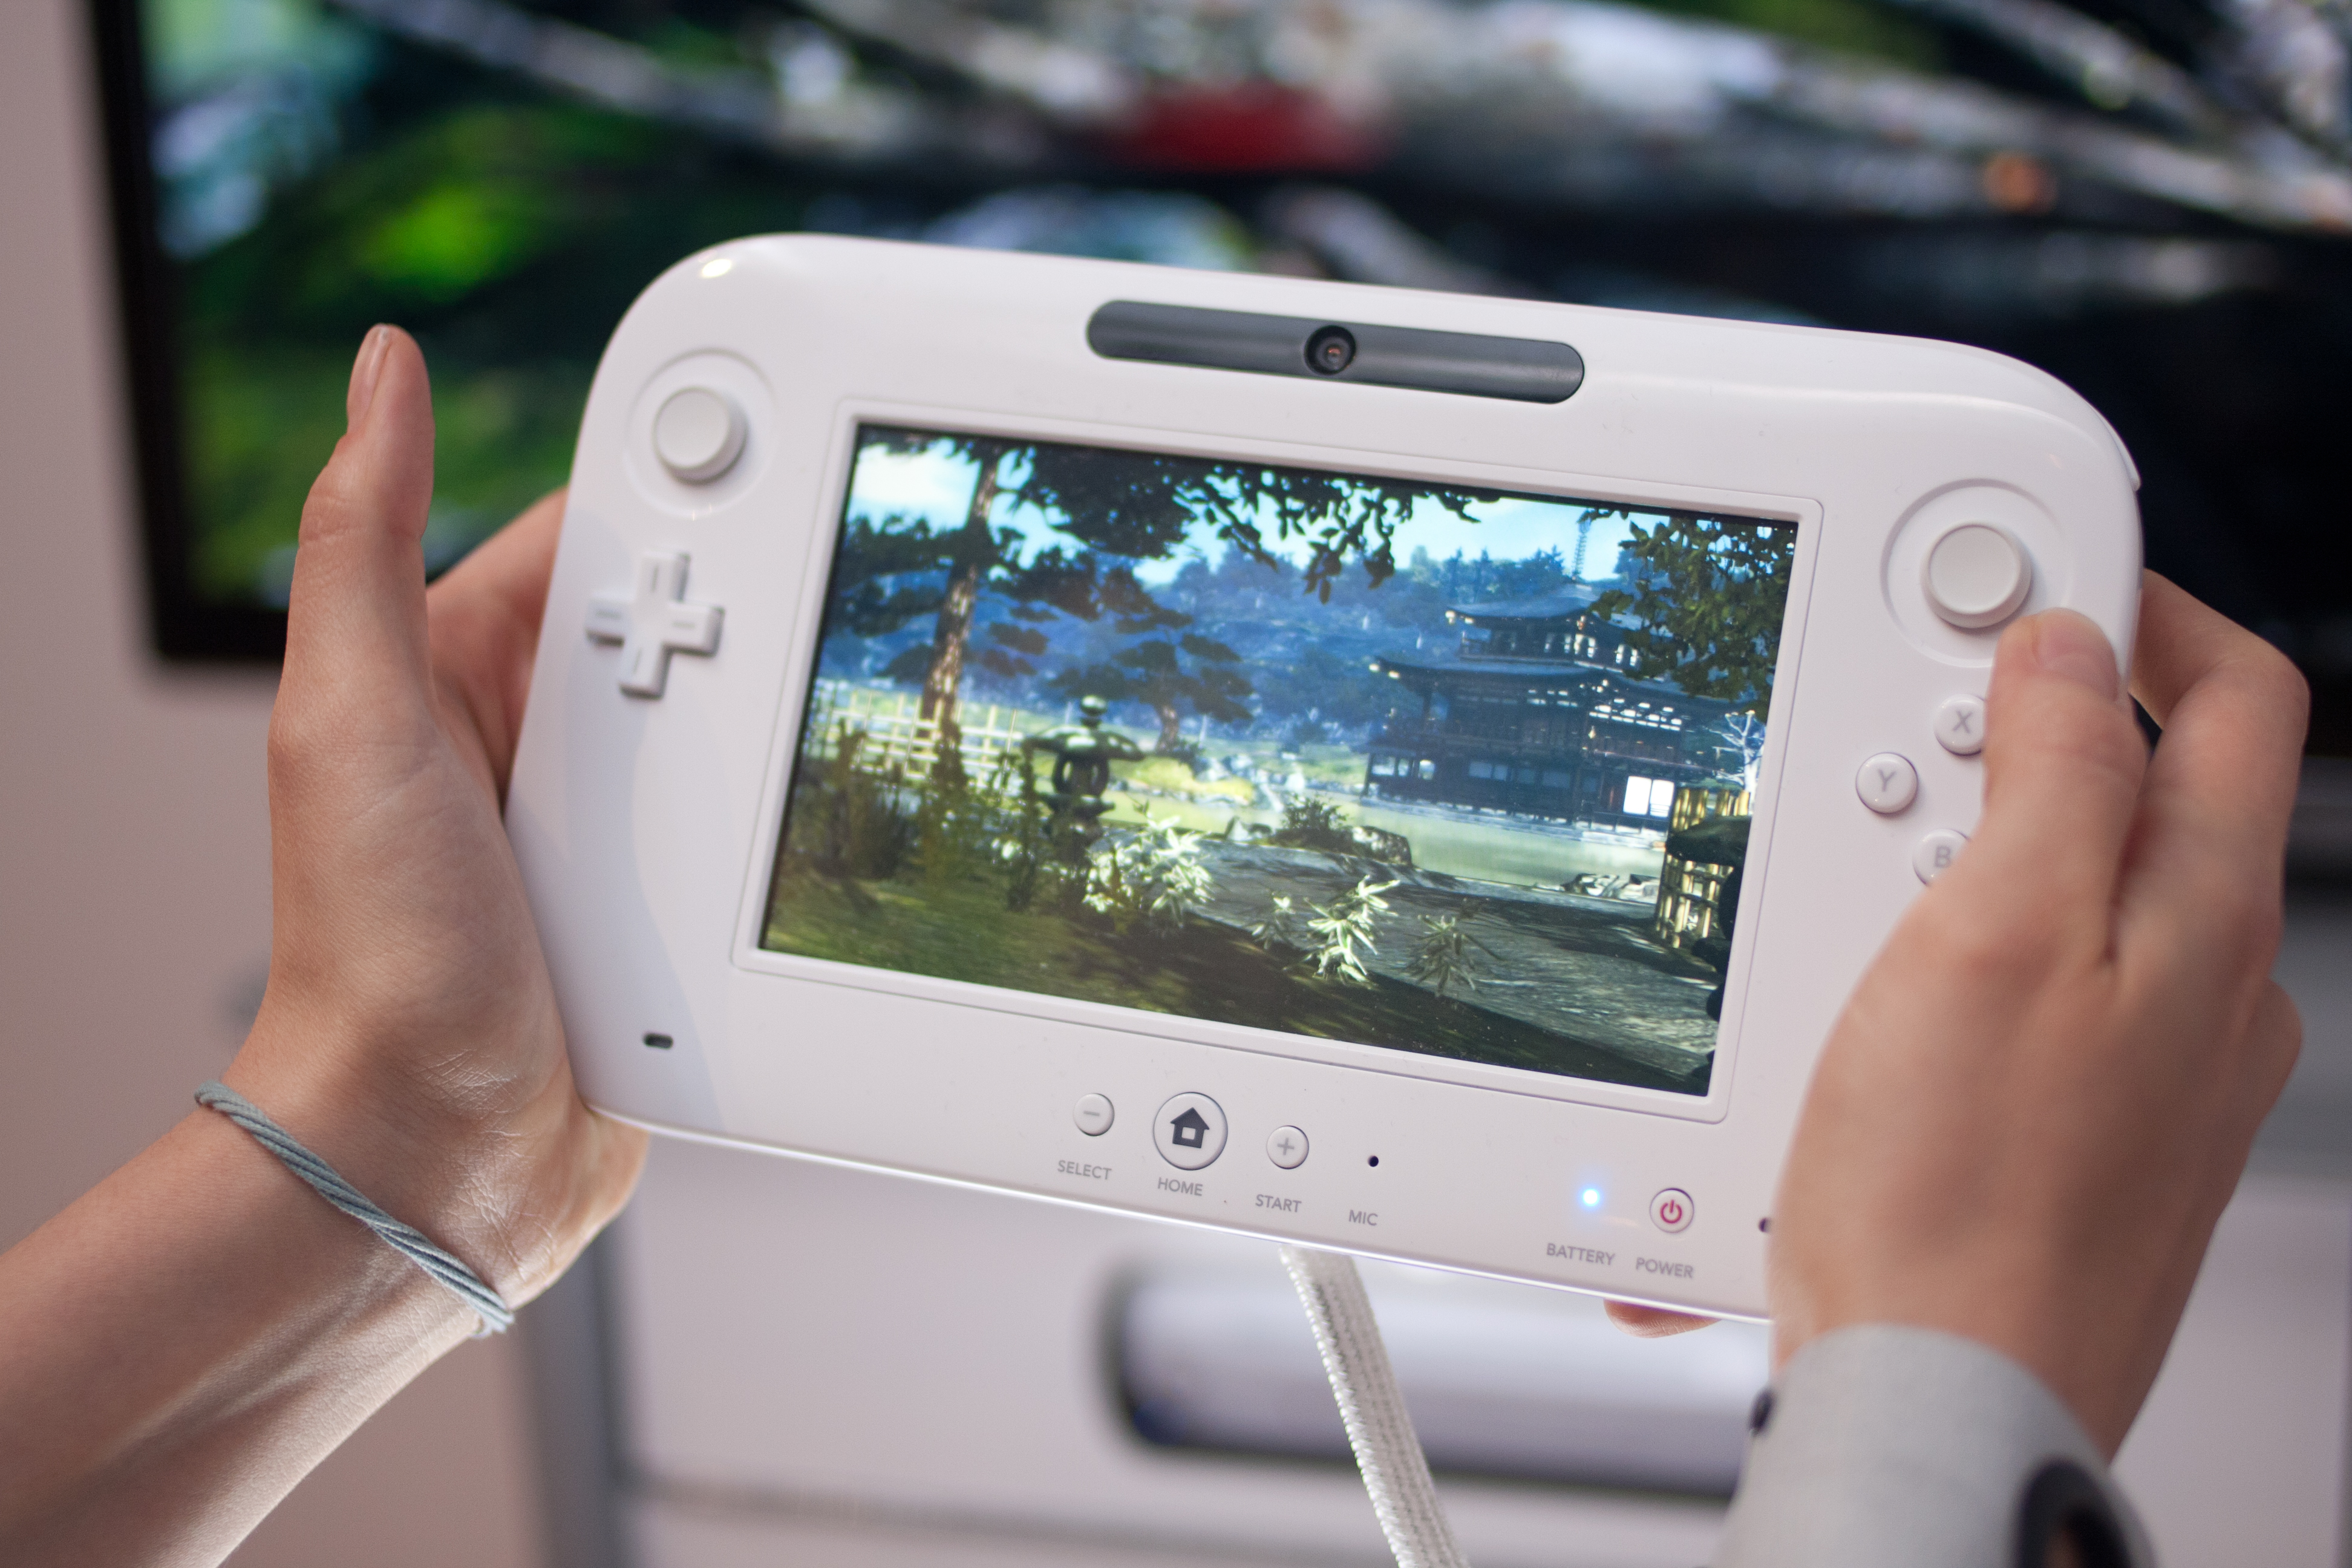 Smartphone Apps for Nintendo Wii U?